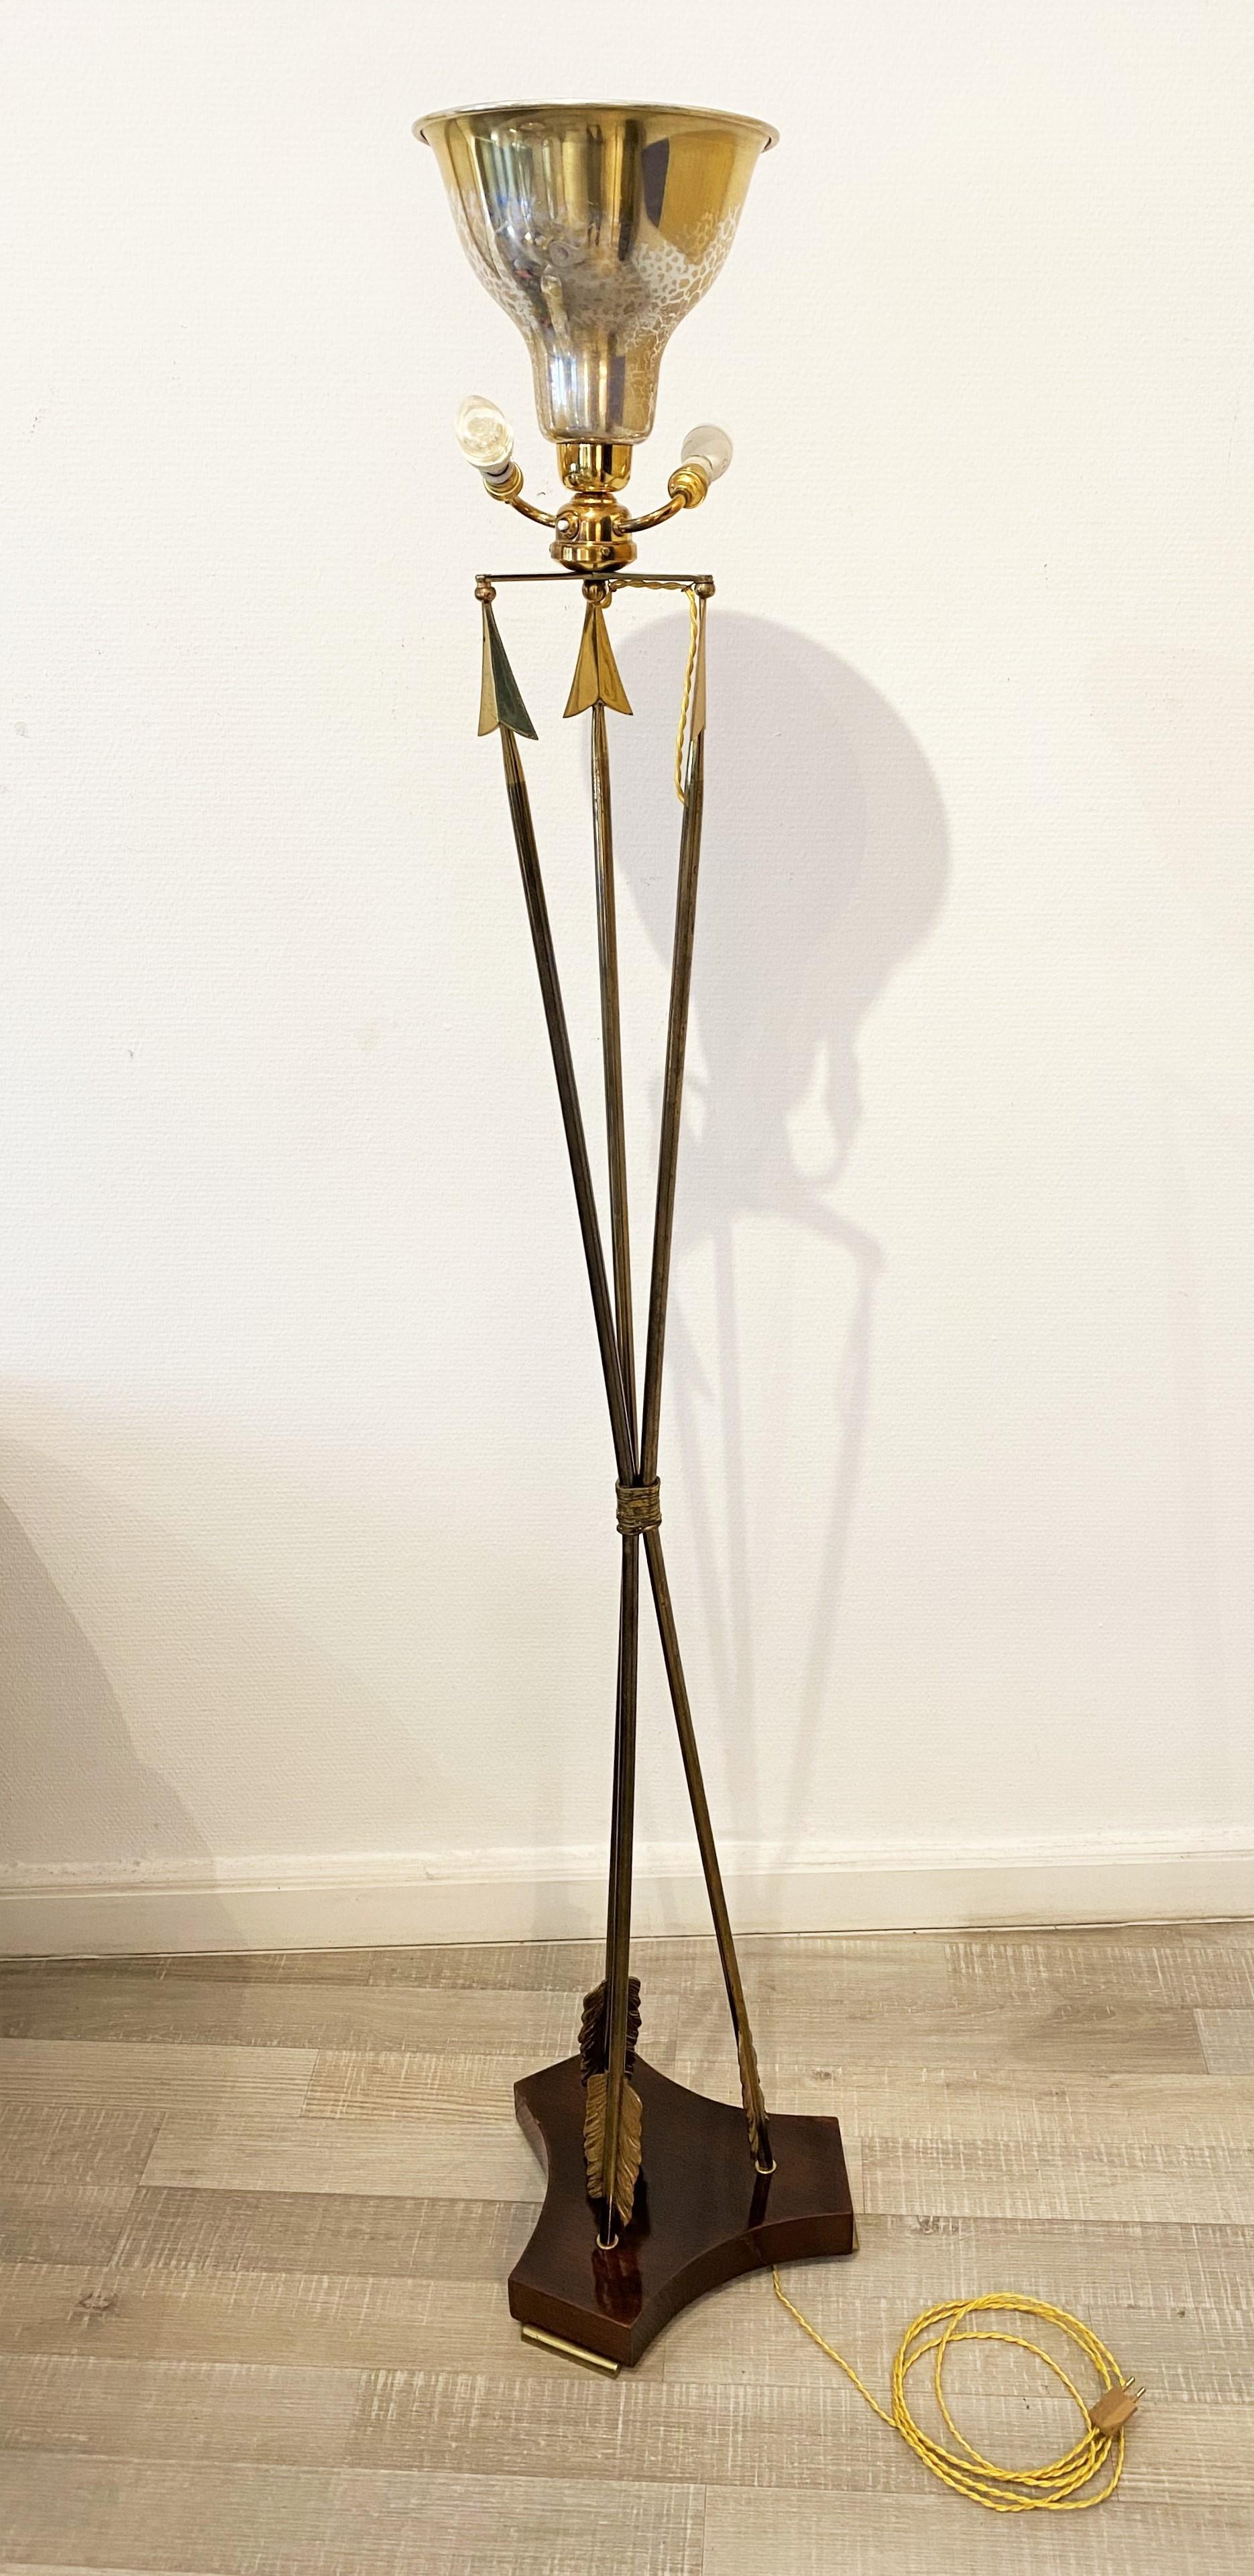 French Brass Arrow Style Floor Lamp on Wooden Base, Maison Jansen, 1950s.